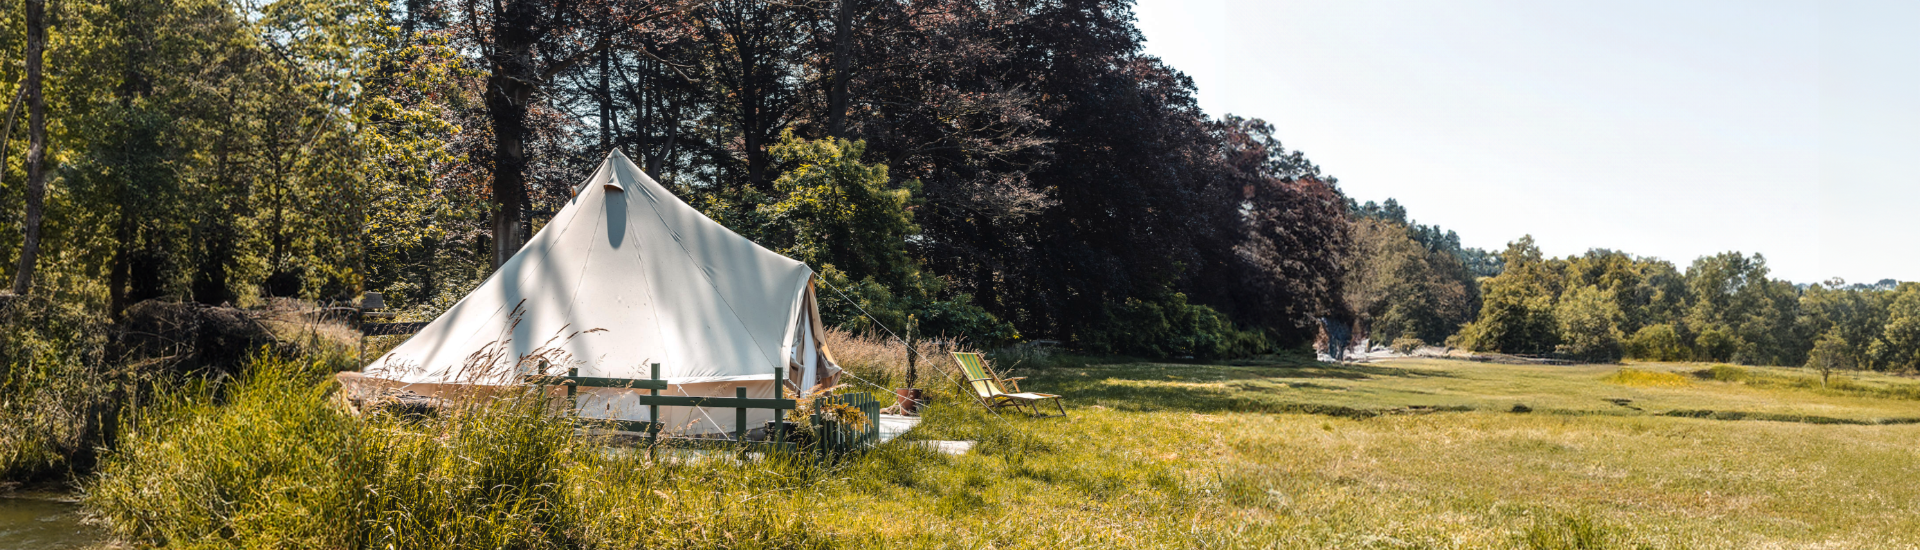 Ontdek de originele Sibley Bell tent